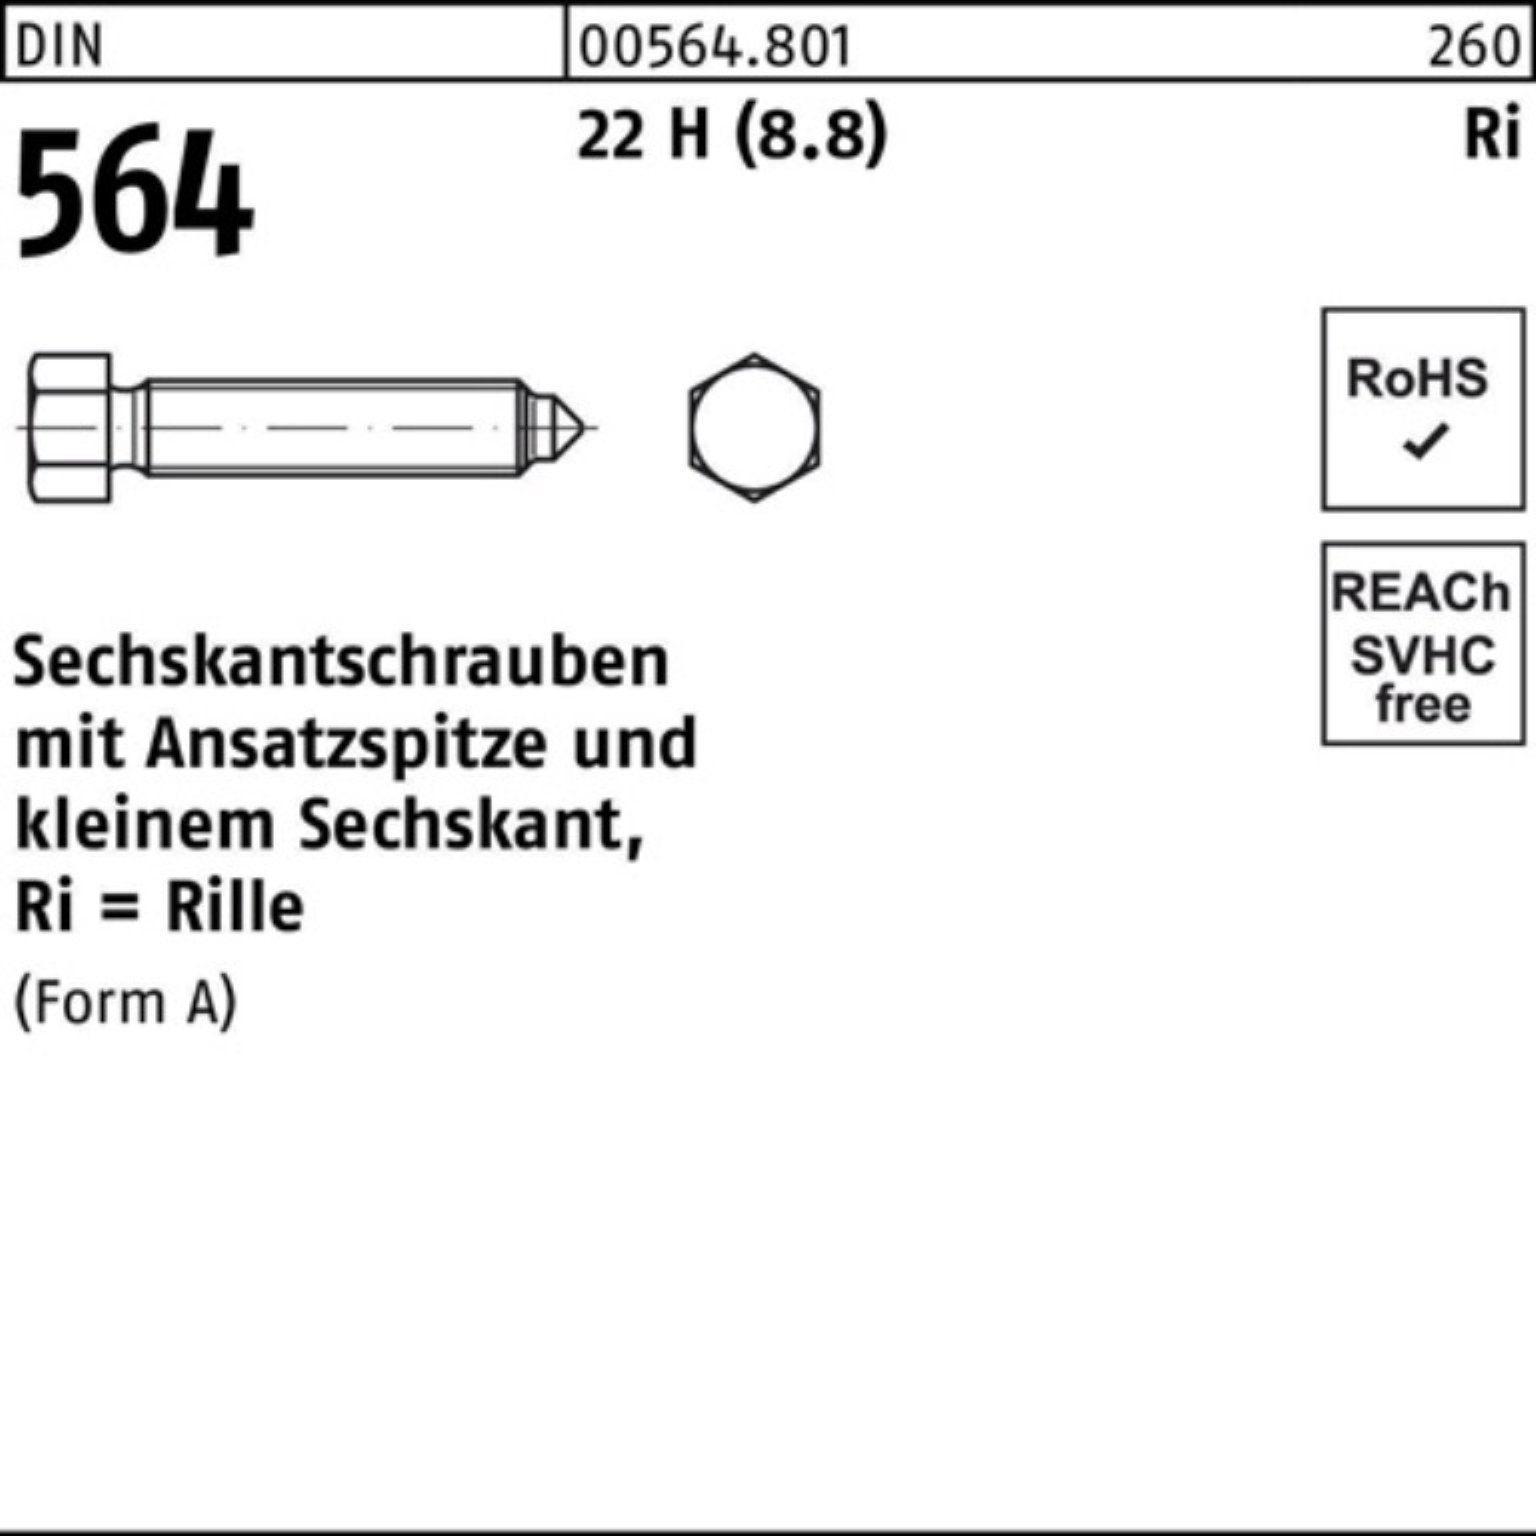 Sechskantschraube H Reyher AM Pack 12x 564 100er (8.8) Sechskantschraube Ansatzspitze DIN 22 60